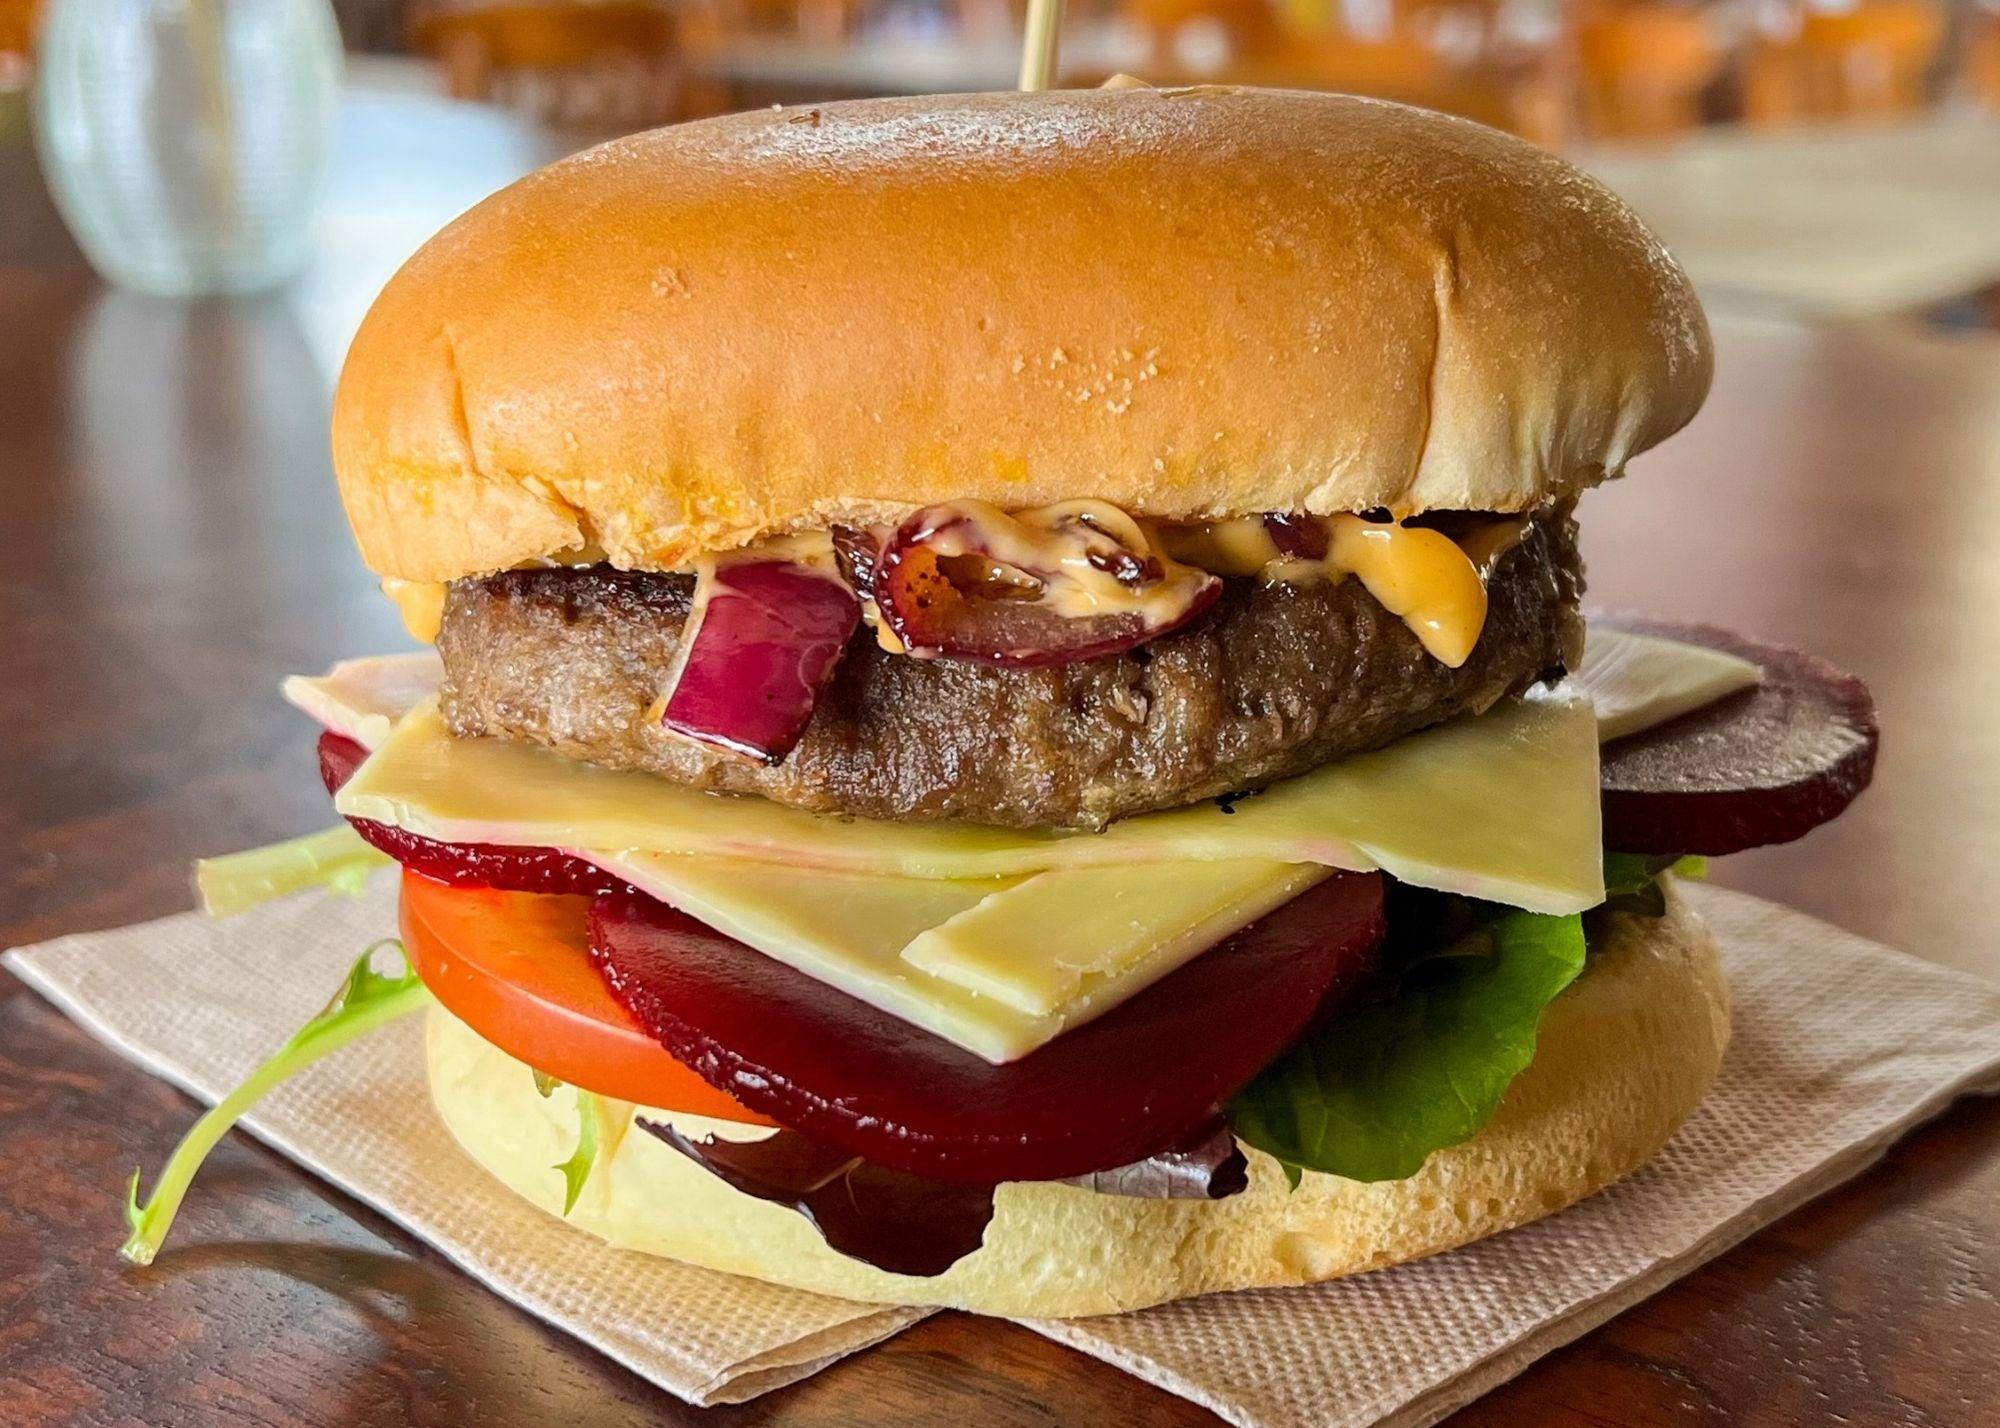 RECIPE: Lamb burger - The Hamilton Hamper